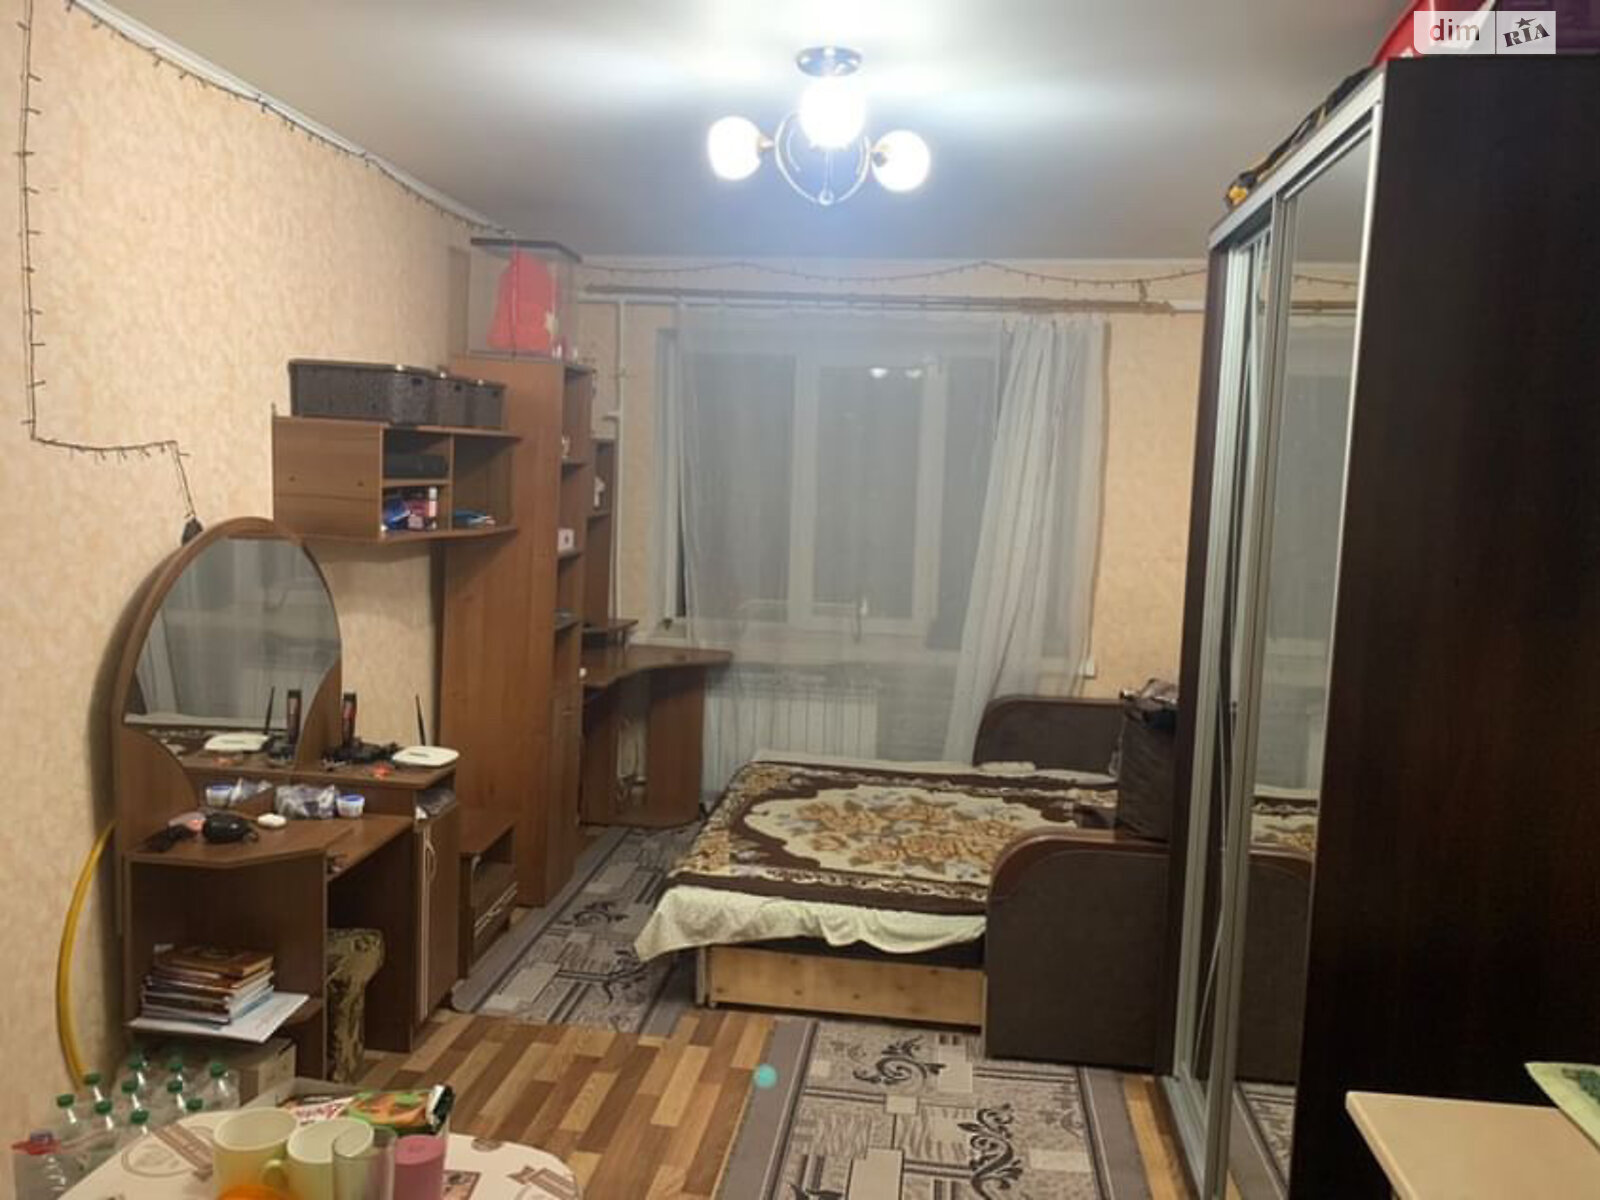 Кімната в Миколаєві на вул. Курортна 15 в районі Ліски на продаж фото 1